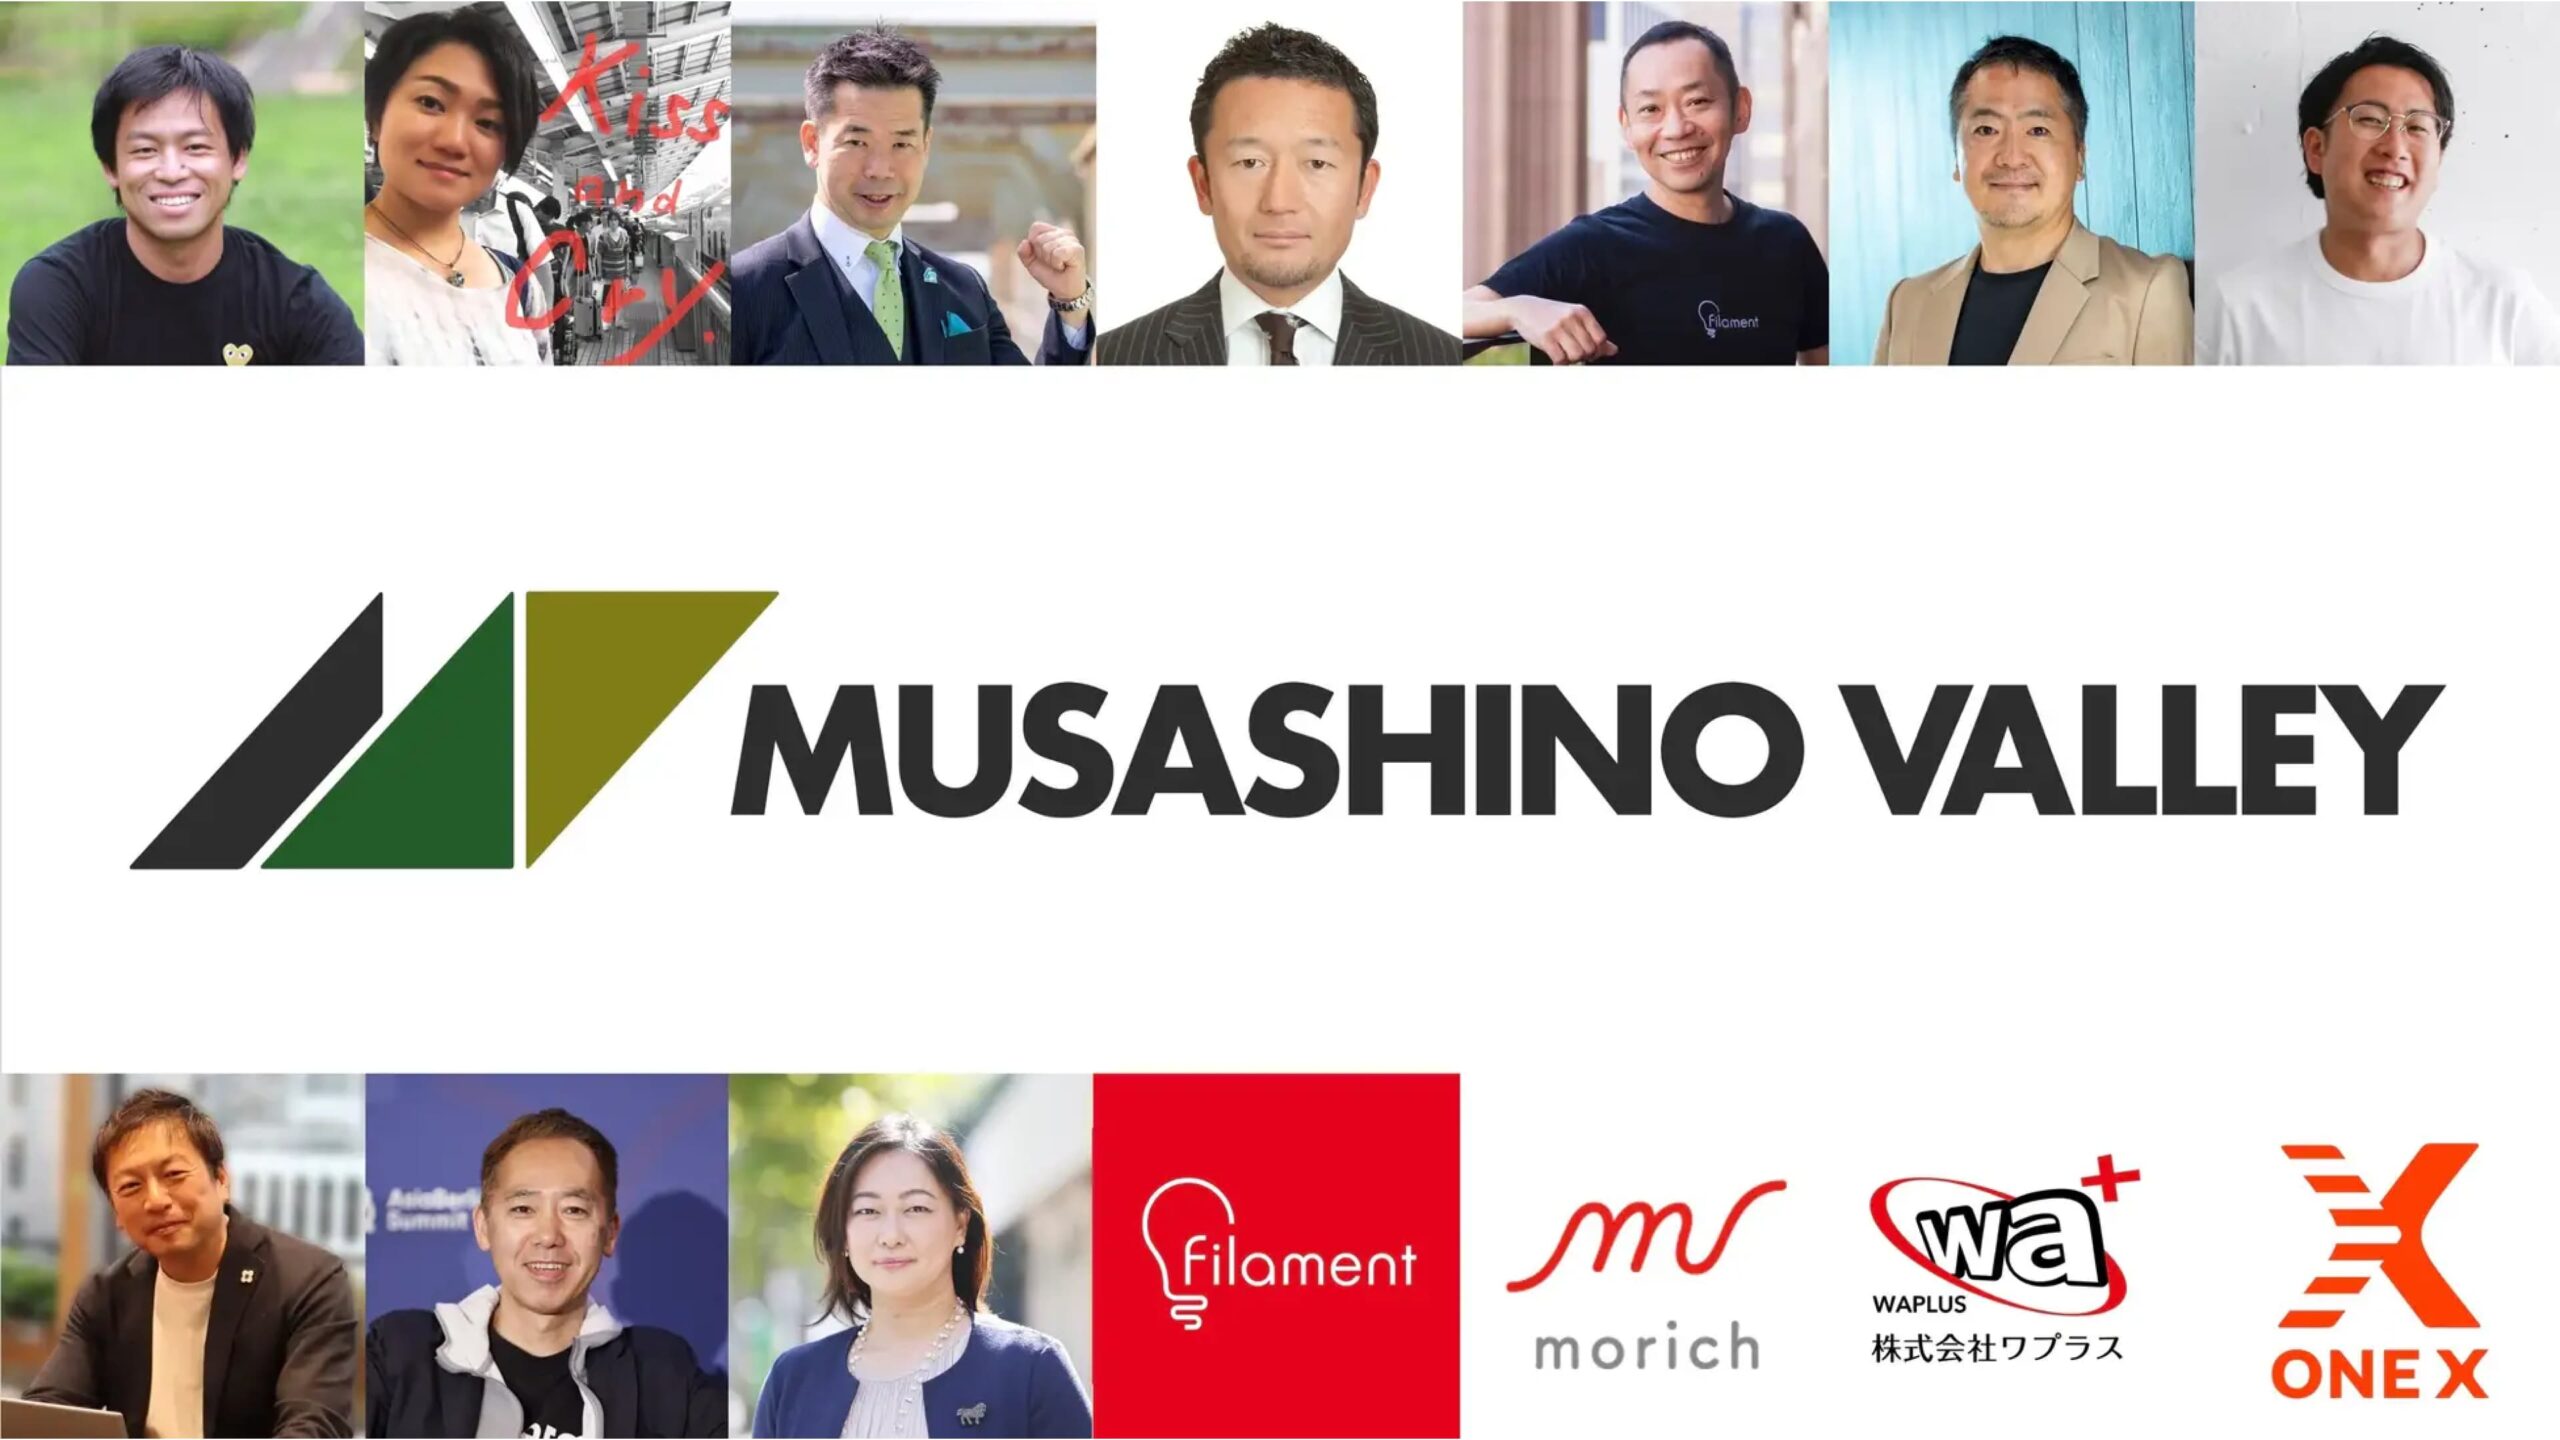 スタートアップスタジオ「Musashino Valley」の運営元である株式会社MVP、各界で活躍するパートナーと共に事業家育成・支援事業を開始——資金調達によりサポート体制強化